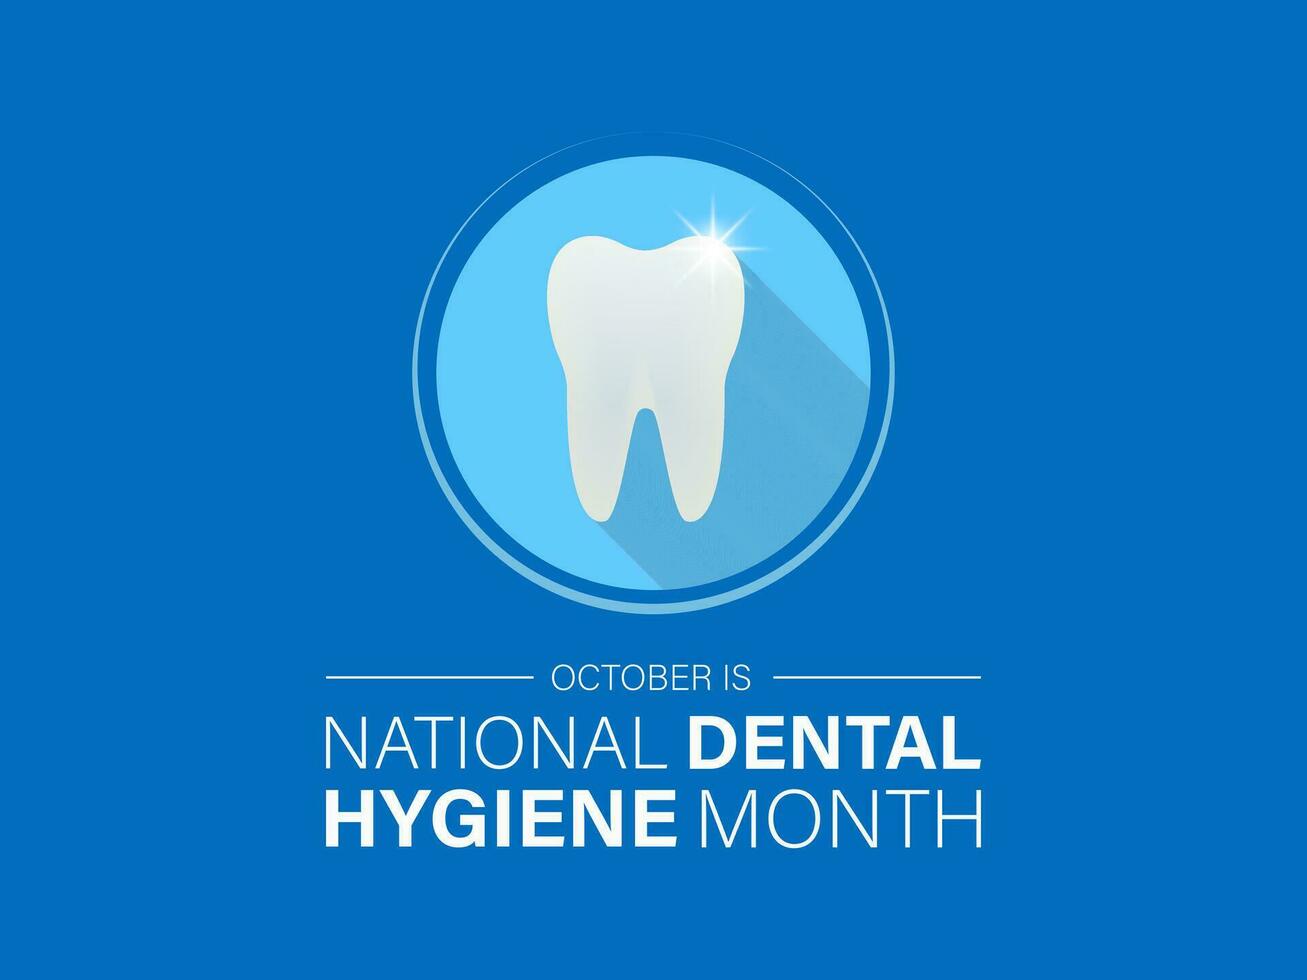 dentale igiene mese osservato ogni anno durante ottobre. striscione, manifesto, carta, sfondo design. vettore